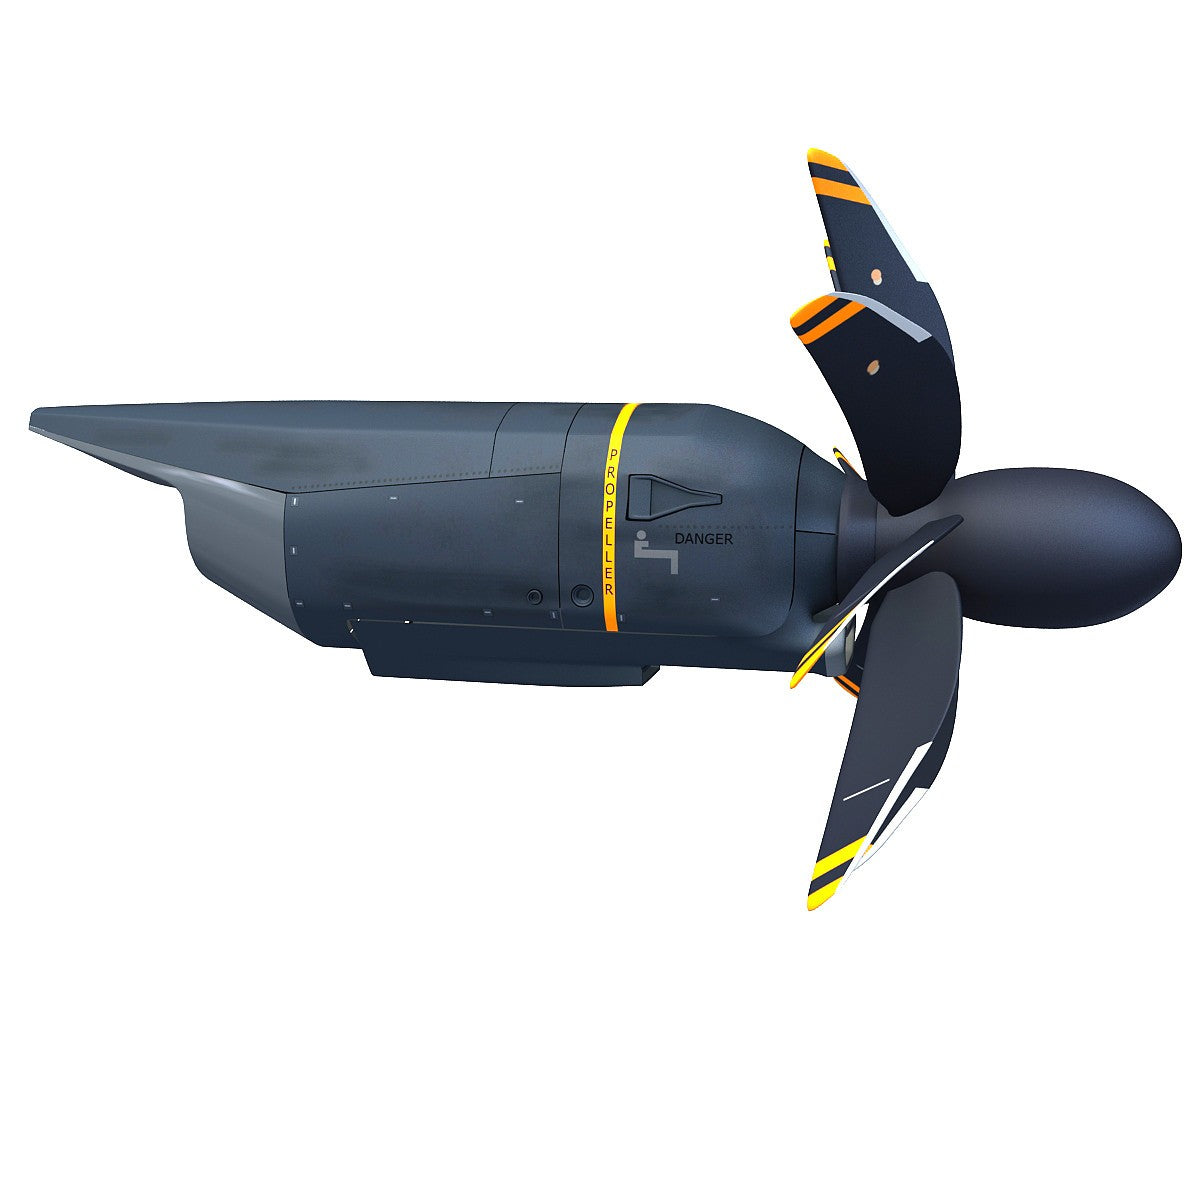 Propfan Jet Engine 3D Model